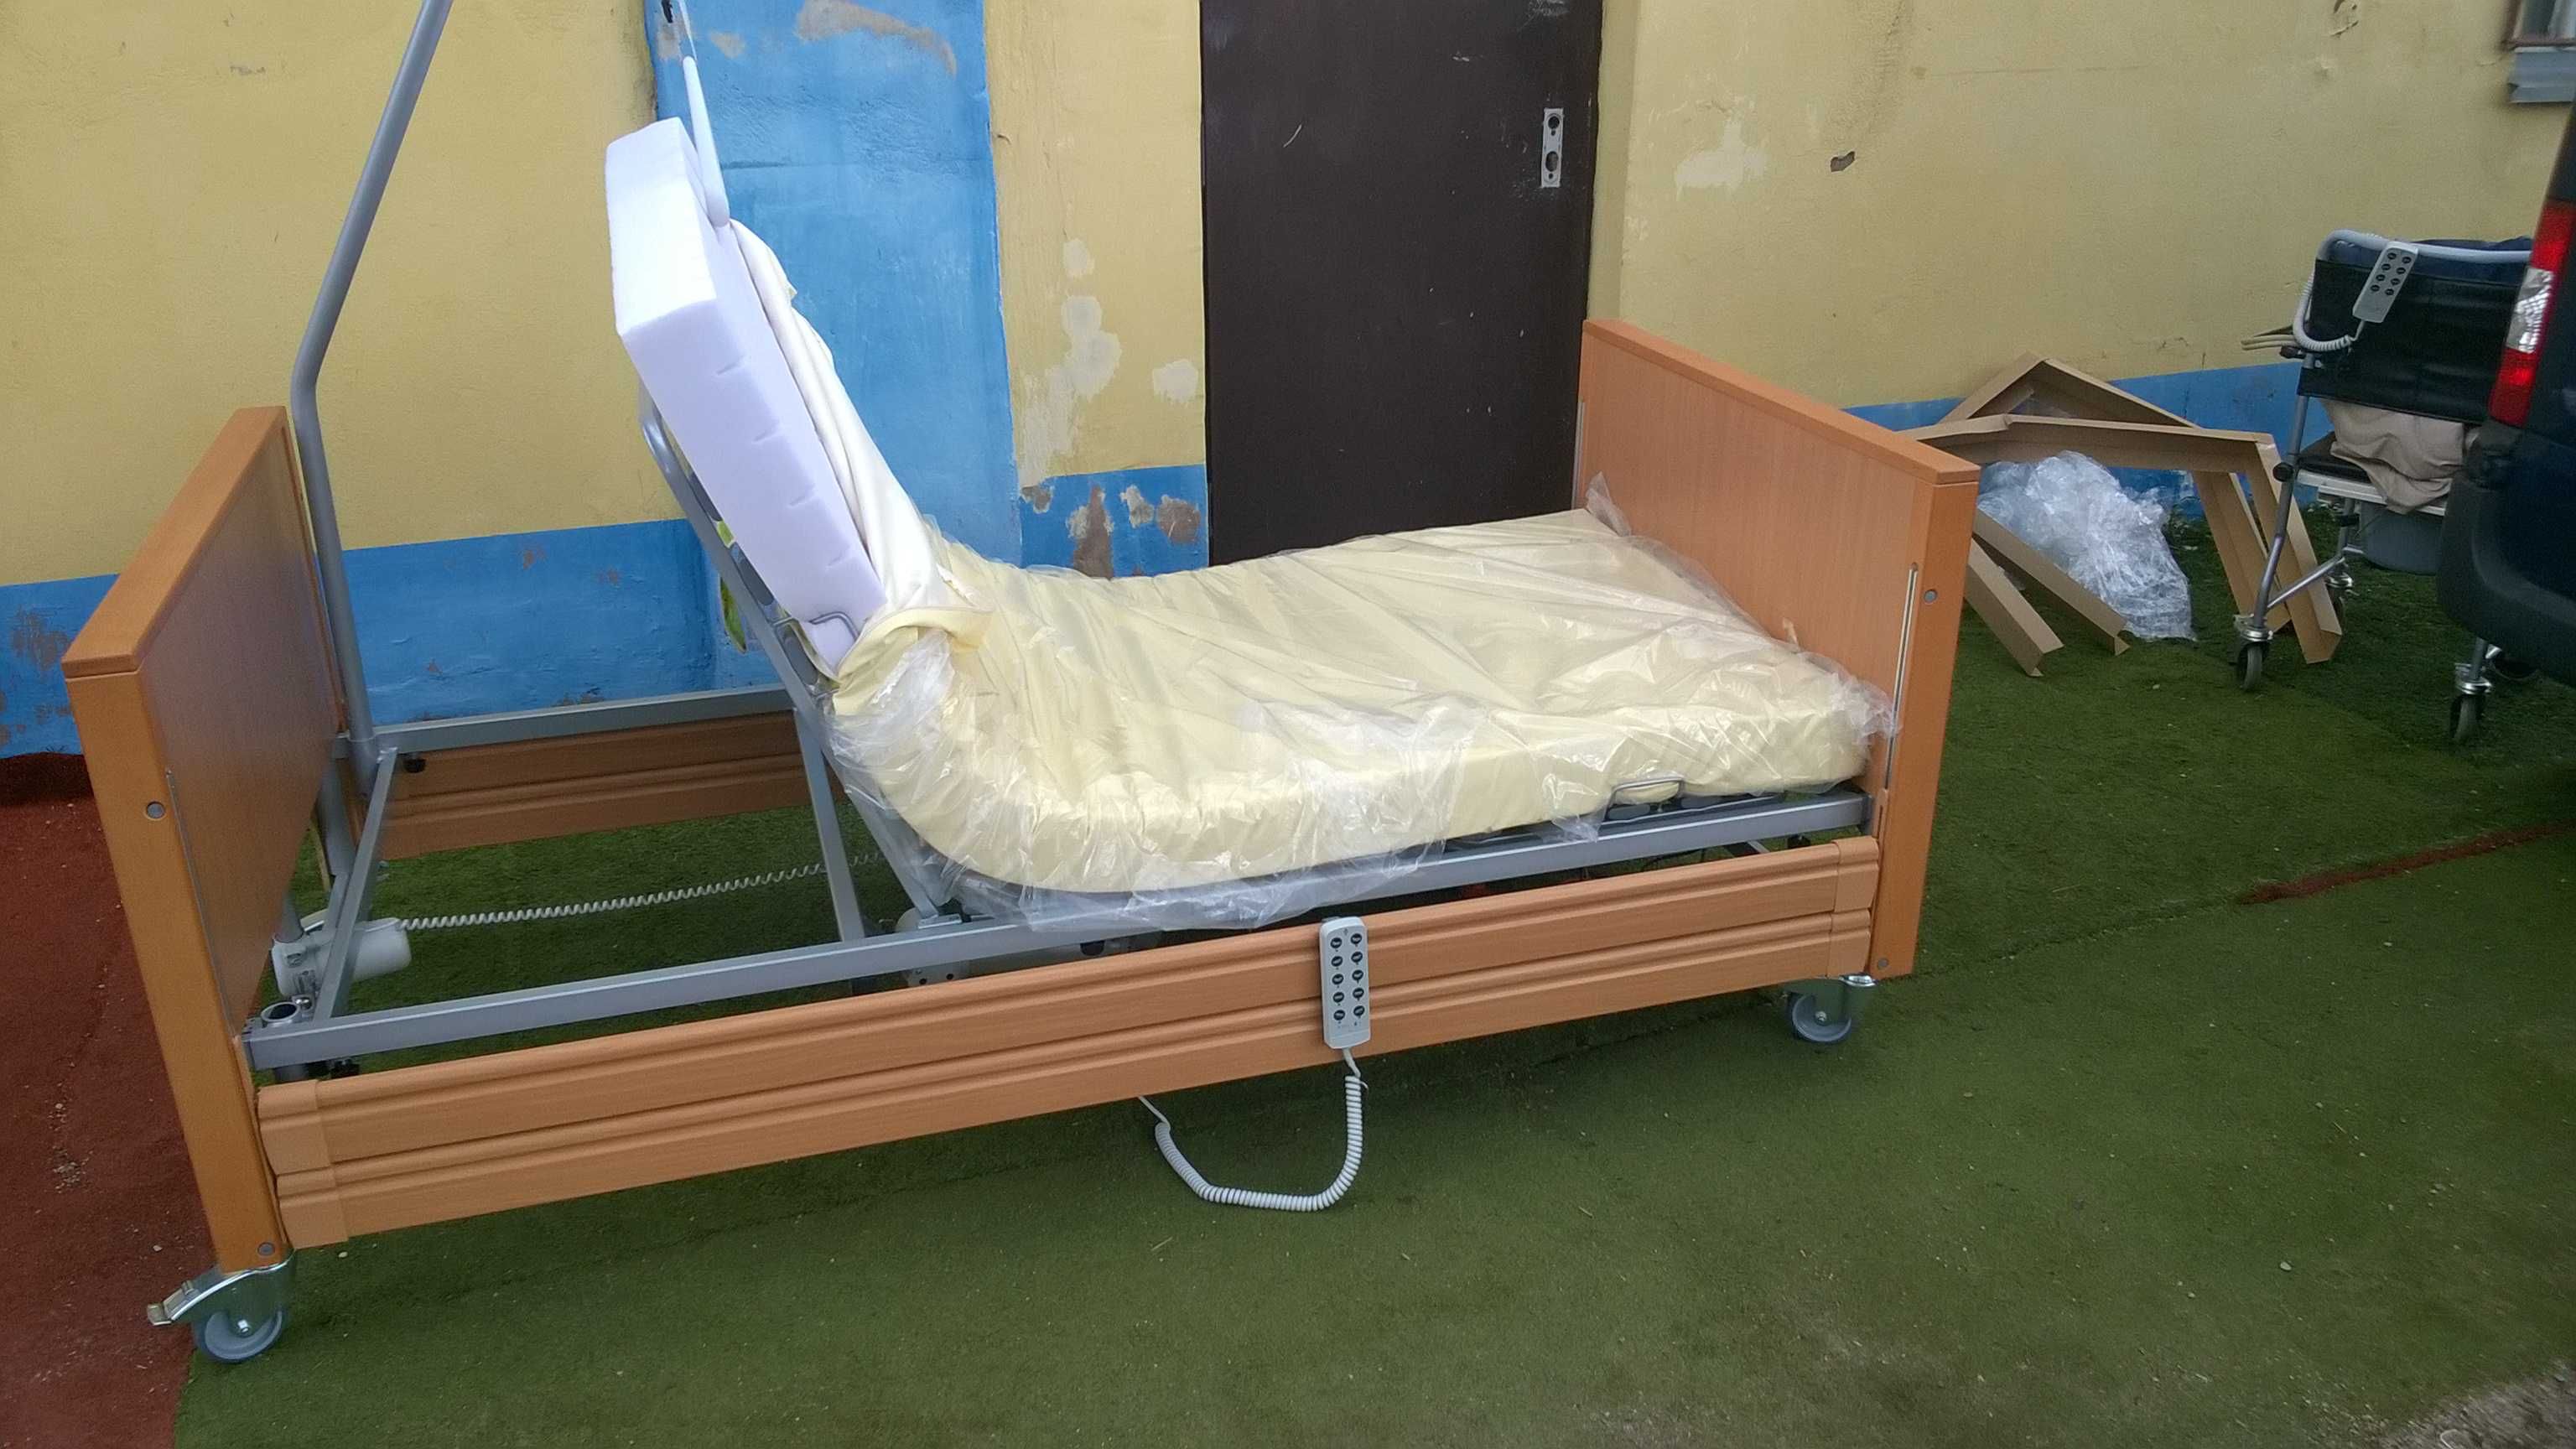 Łóżko rehabilitacyjne Elbur 331 z wysięgnikiem. Szybka dostawa